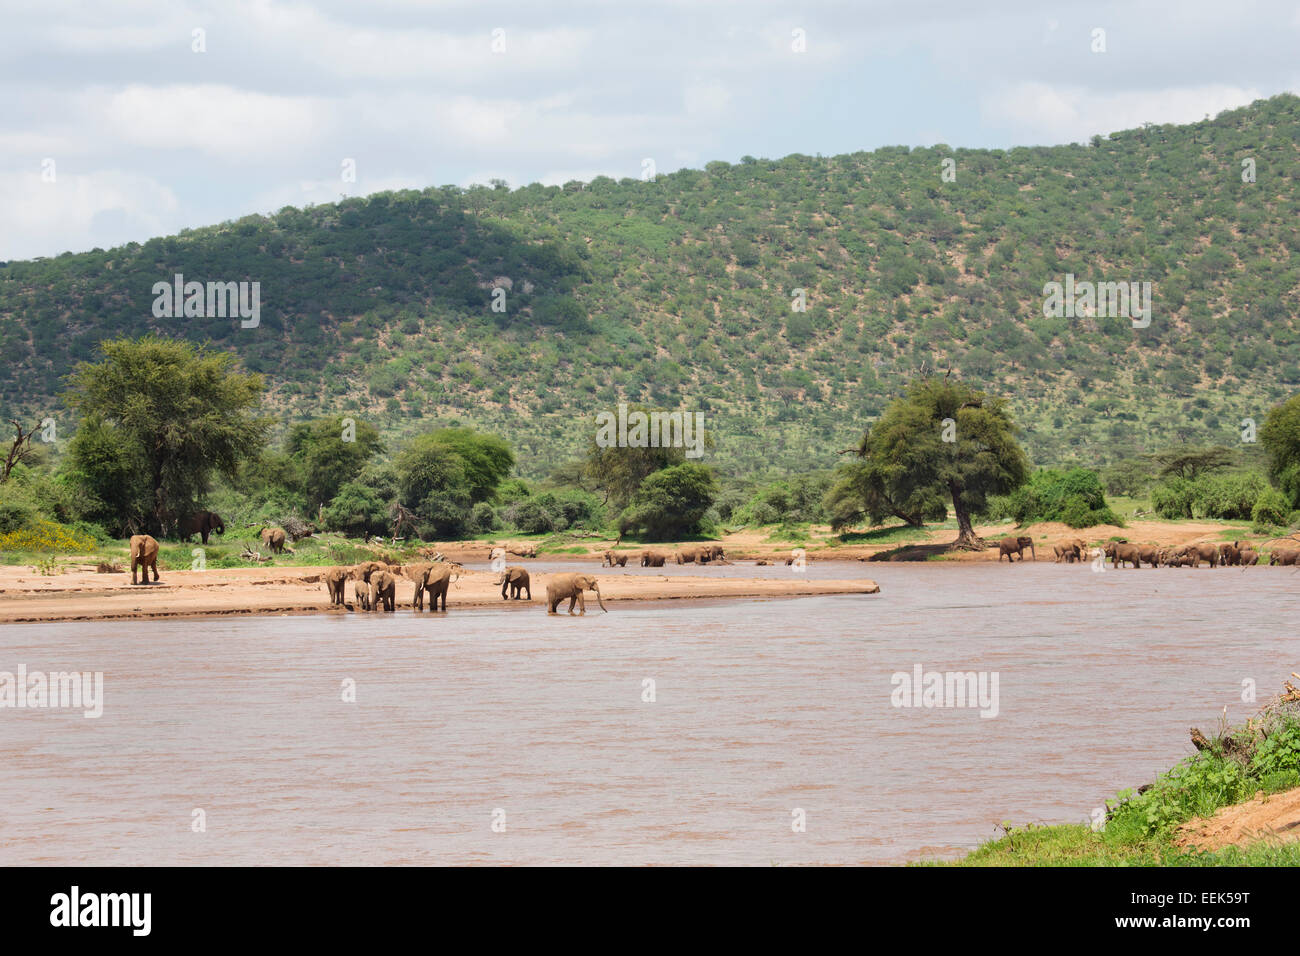 Manada de elefantes (Loxodonta africana), bebiendo en el río Uaso Nyiro en el Parque Nacional de Samburu, Kenia Foto de stock